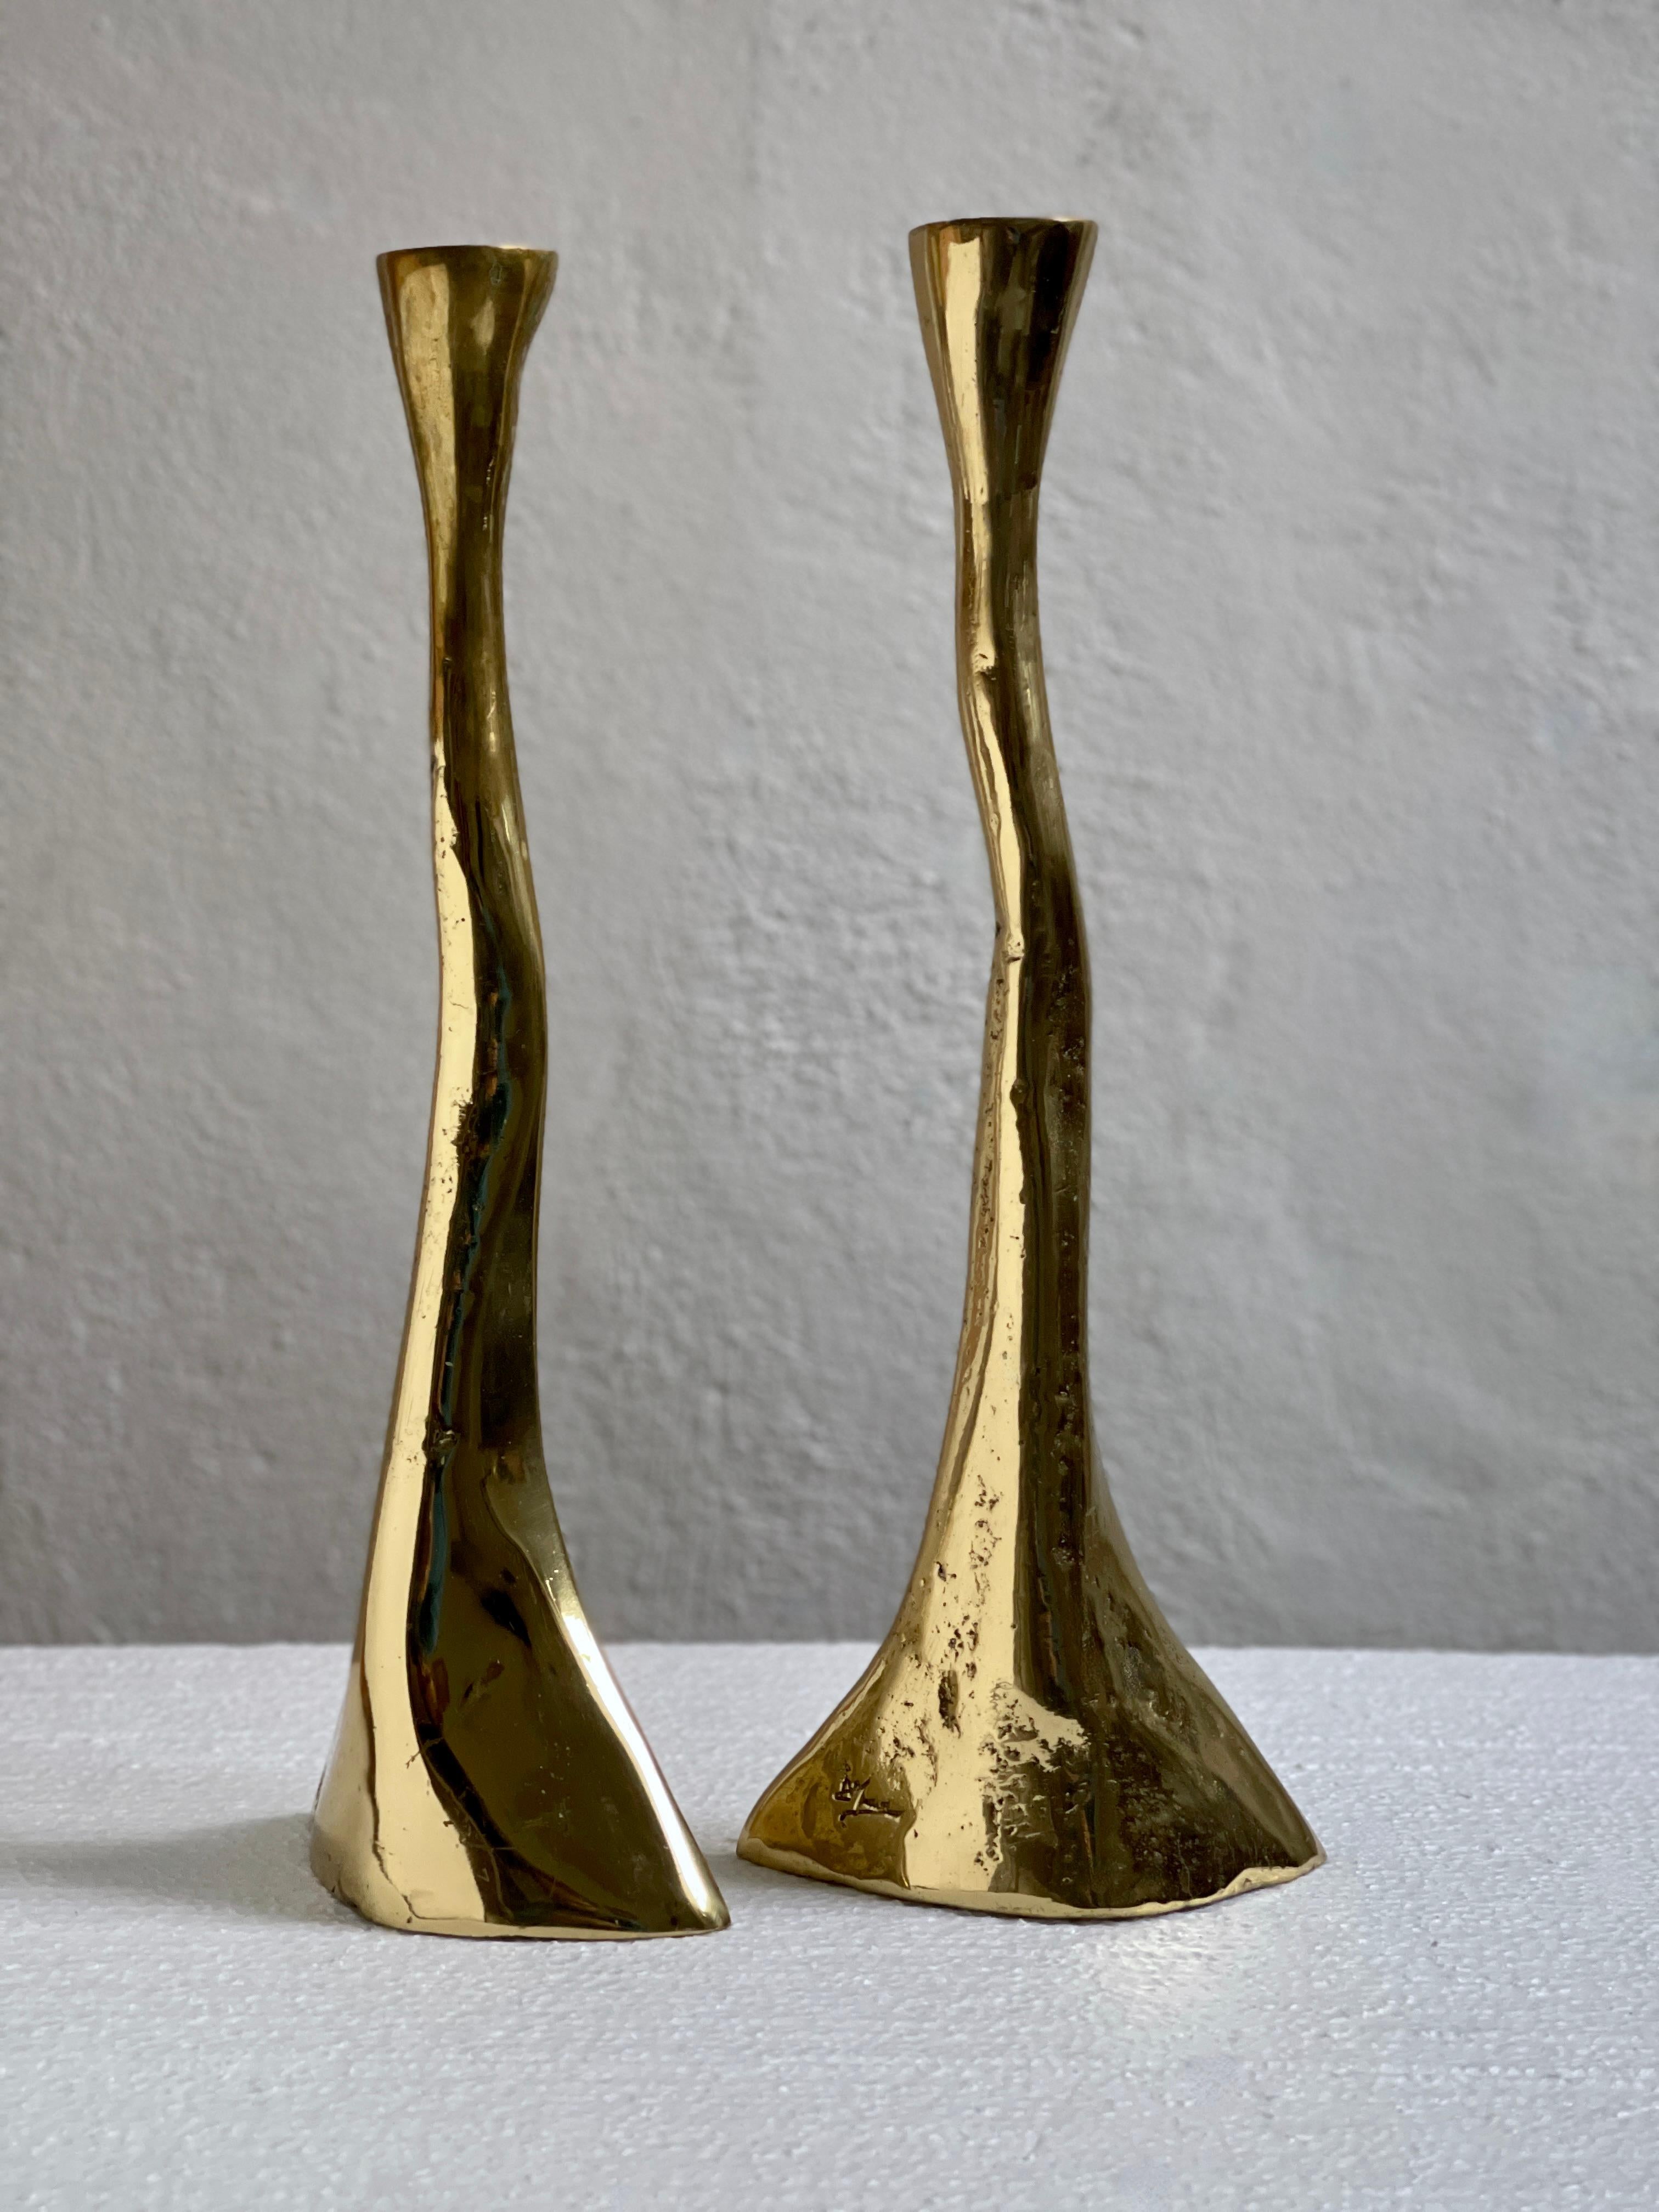 Cette rare paire de chandeliers en laiton massif et lourd du Danemark du milieu du XXe siècle est un témoignage captivant de la fusion de l'artisanat et du design inhérente aux arts décoratifs de l'époque.

Le rustique  La technique de coulée